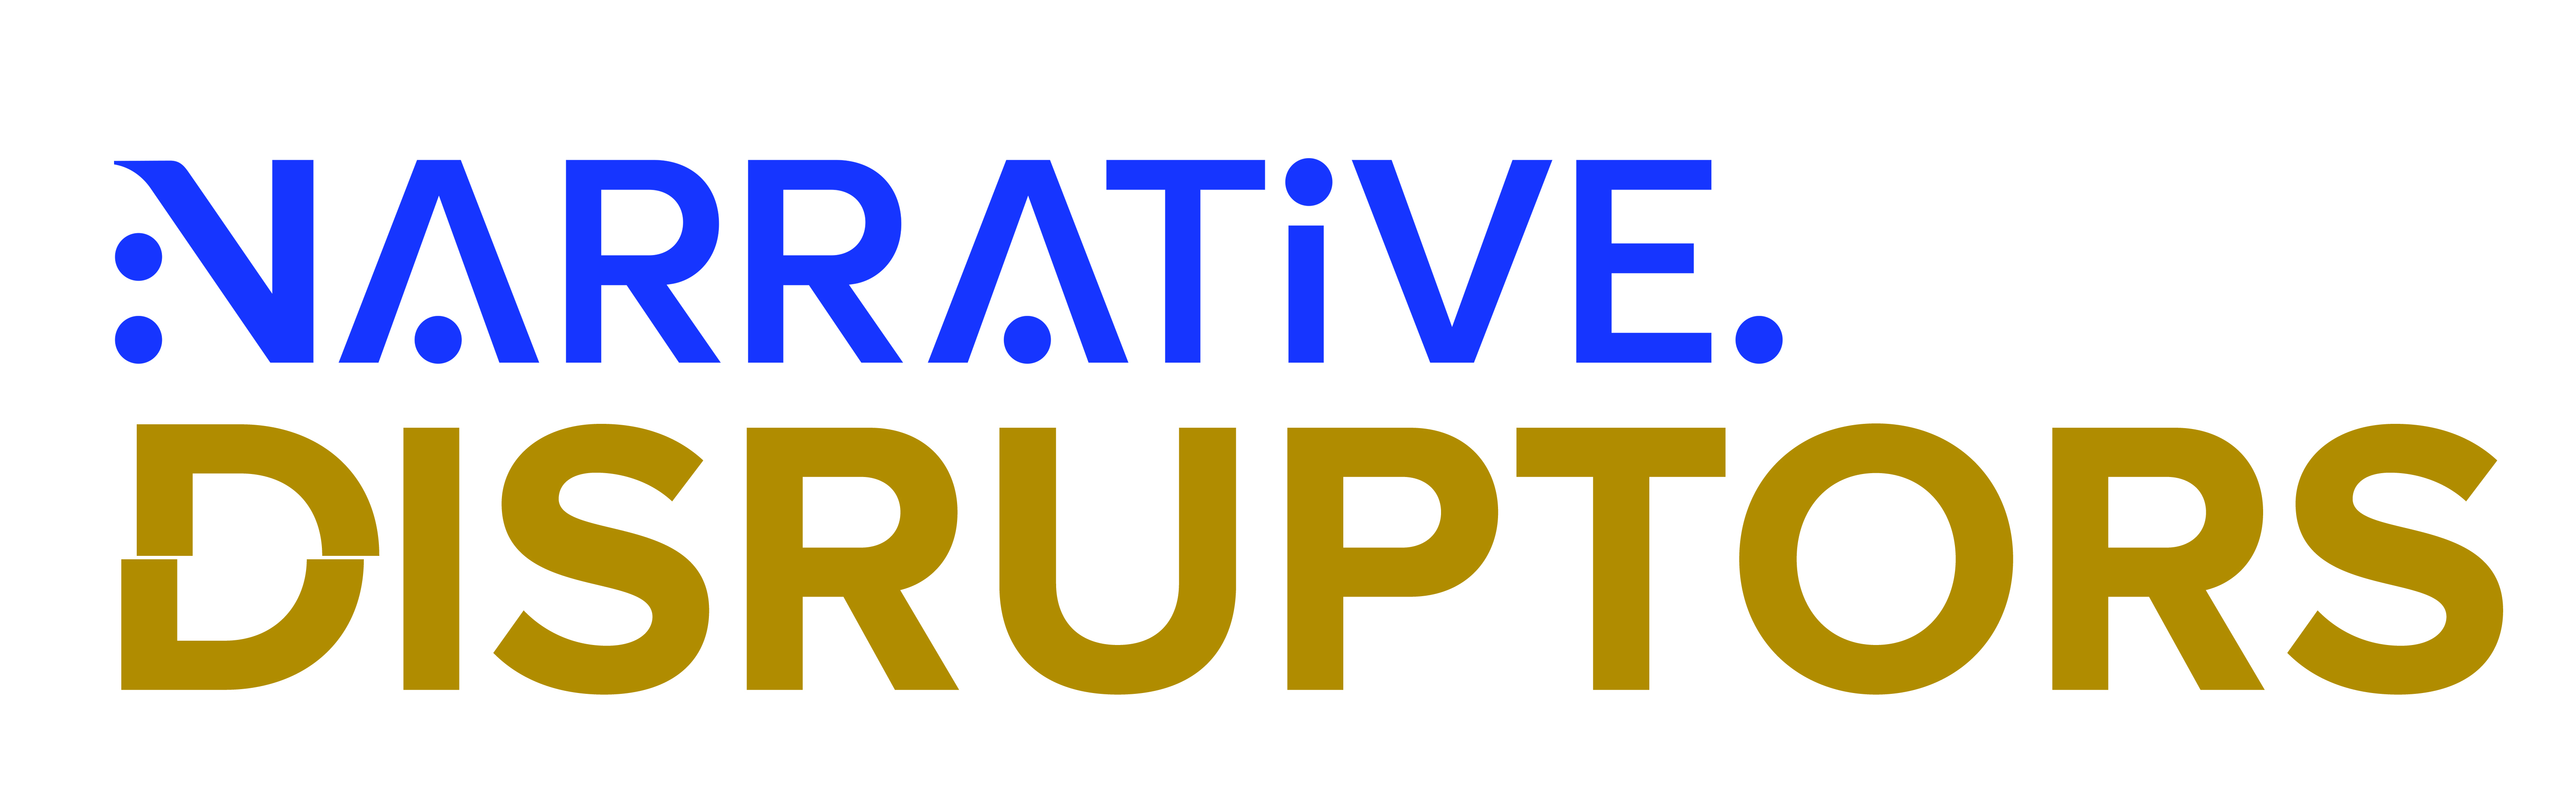 Narrative Disruptors Logo